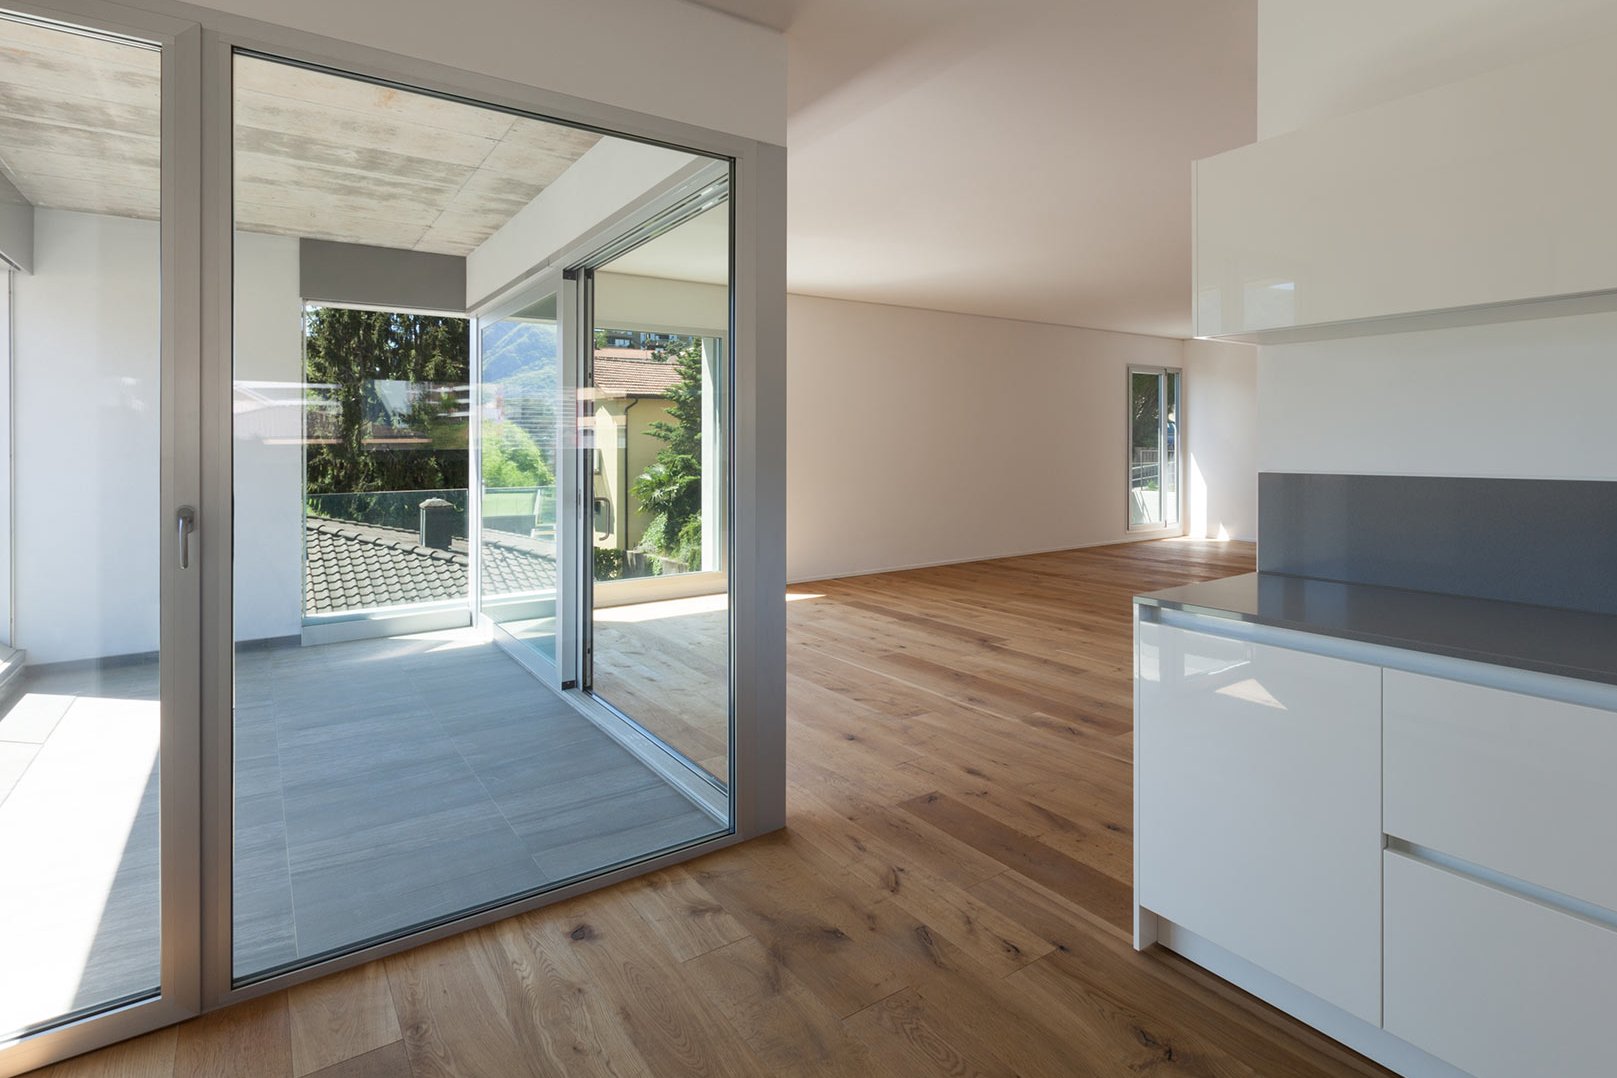 Eingebaute Hebeschiebefenstertür in einem Haus, als Referenz für ein Fensterbau Unternehmen